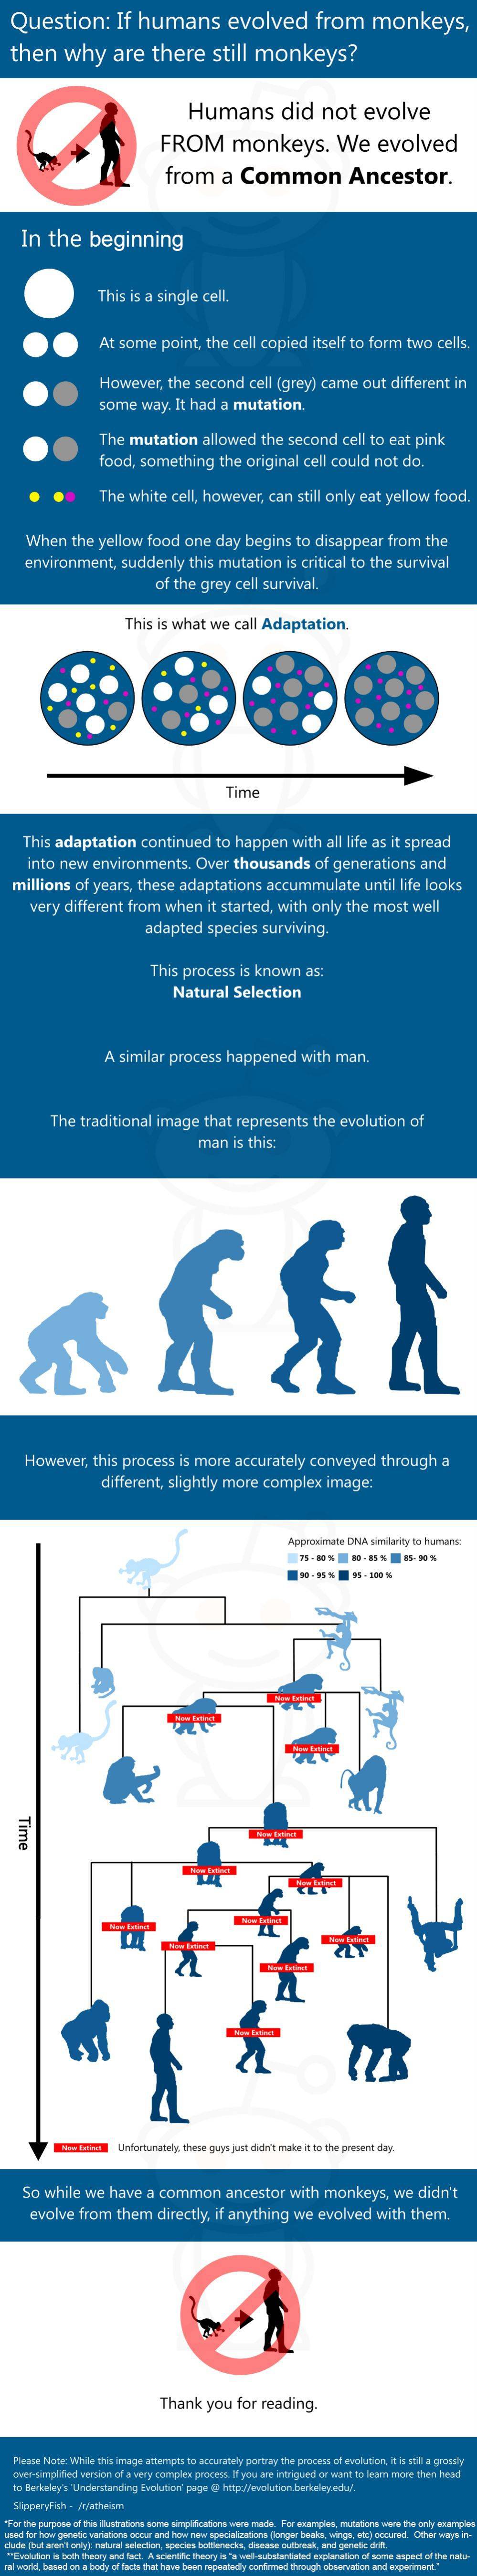 Еволюцията на човека